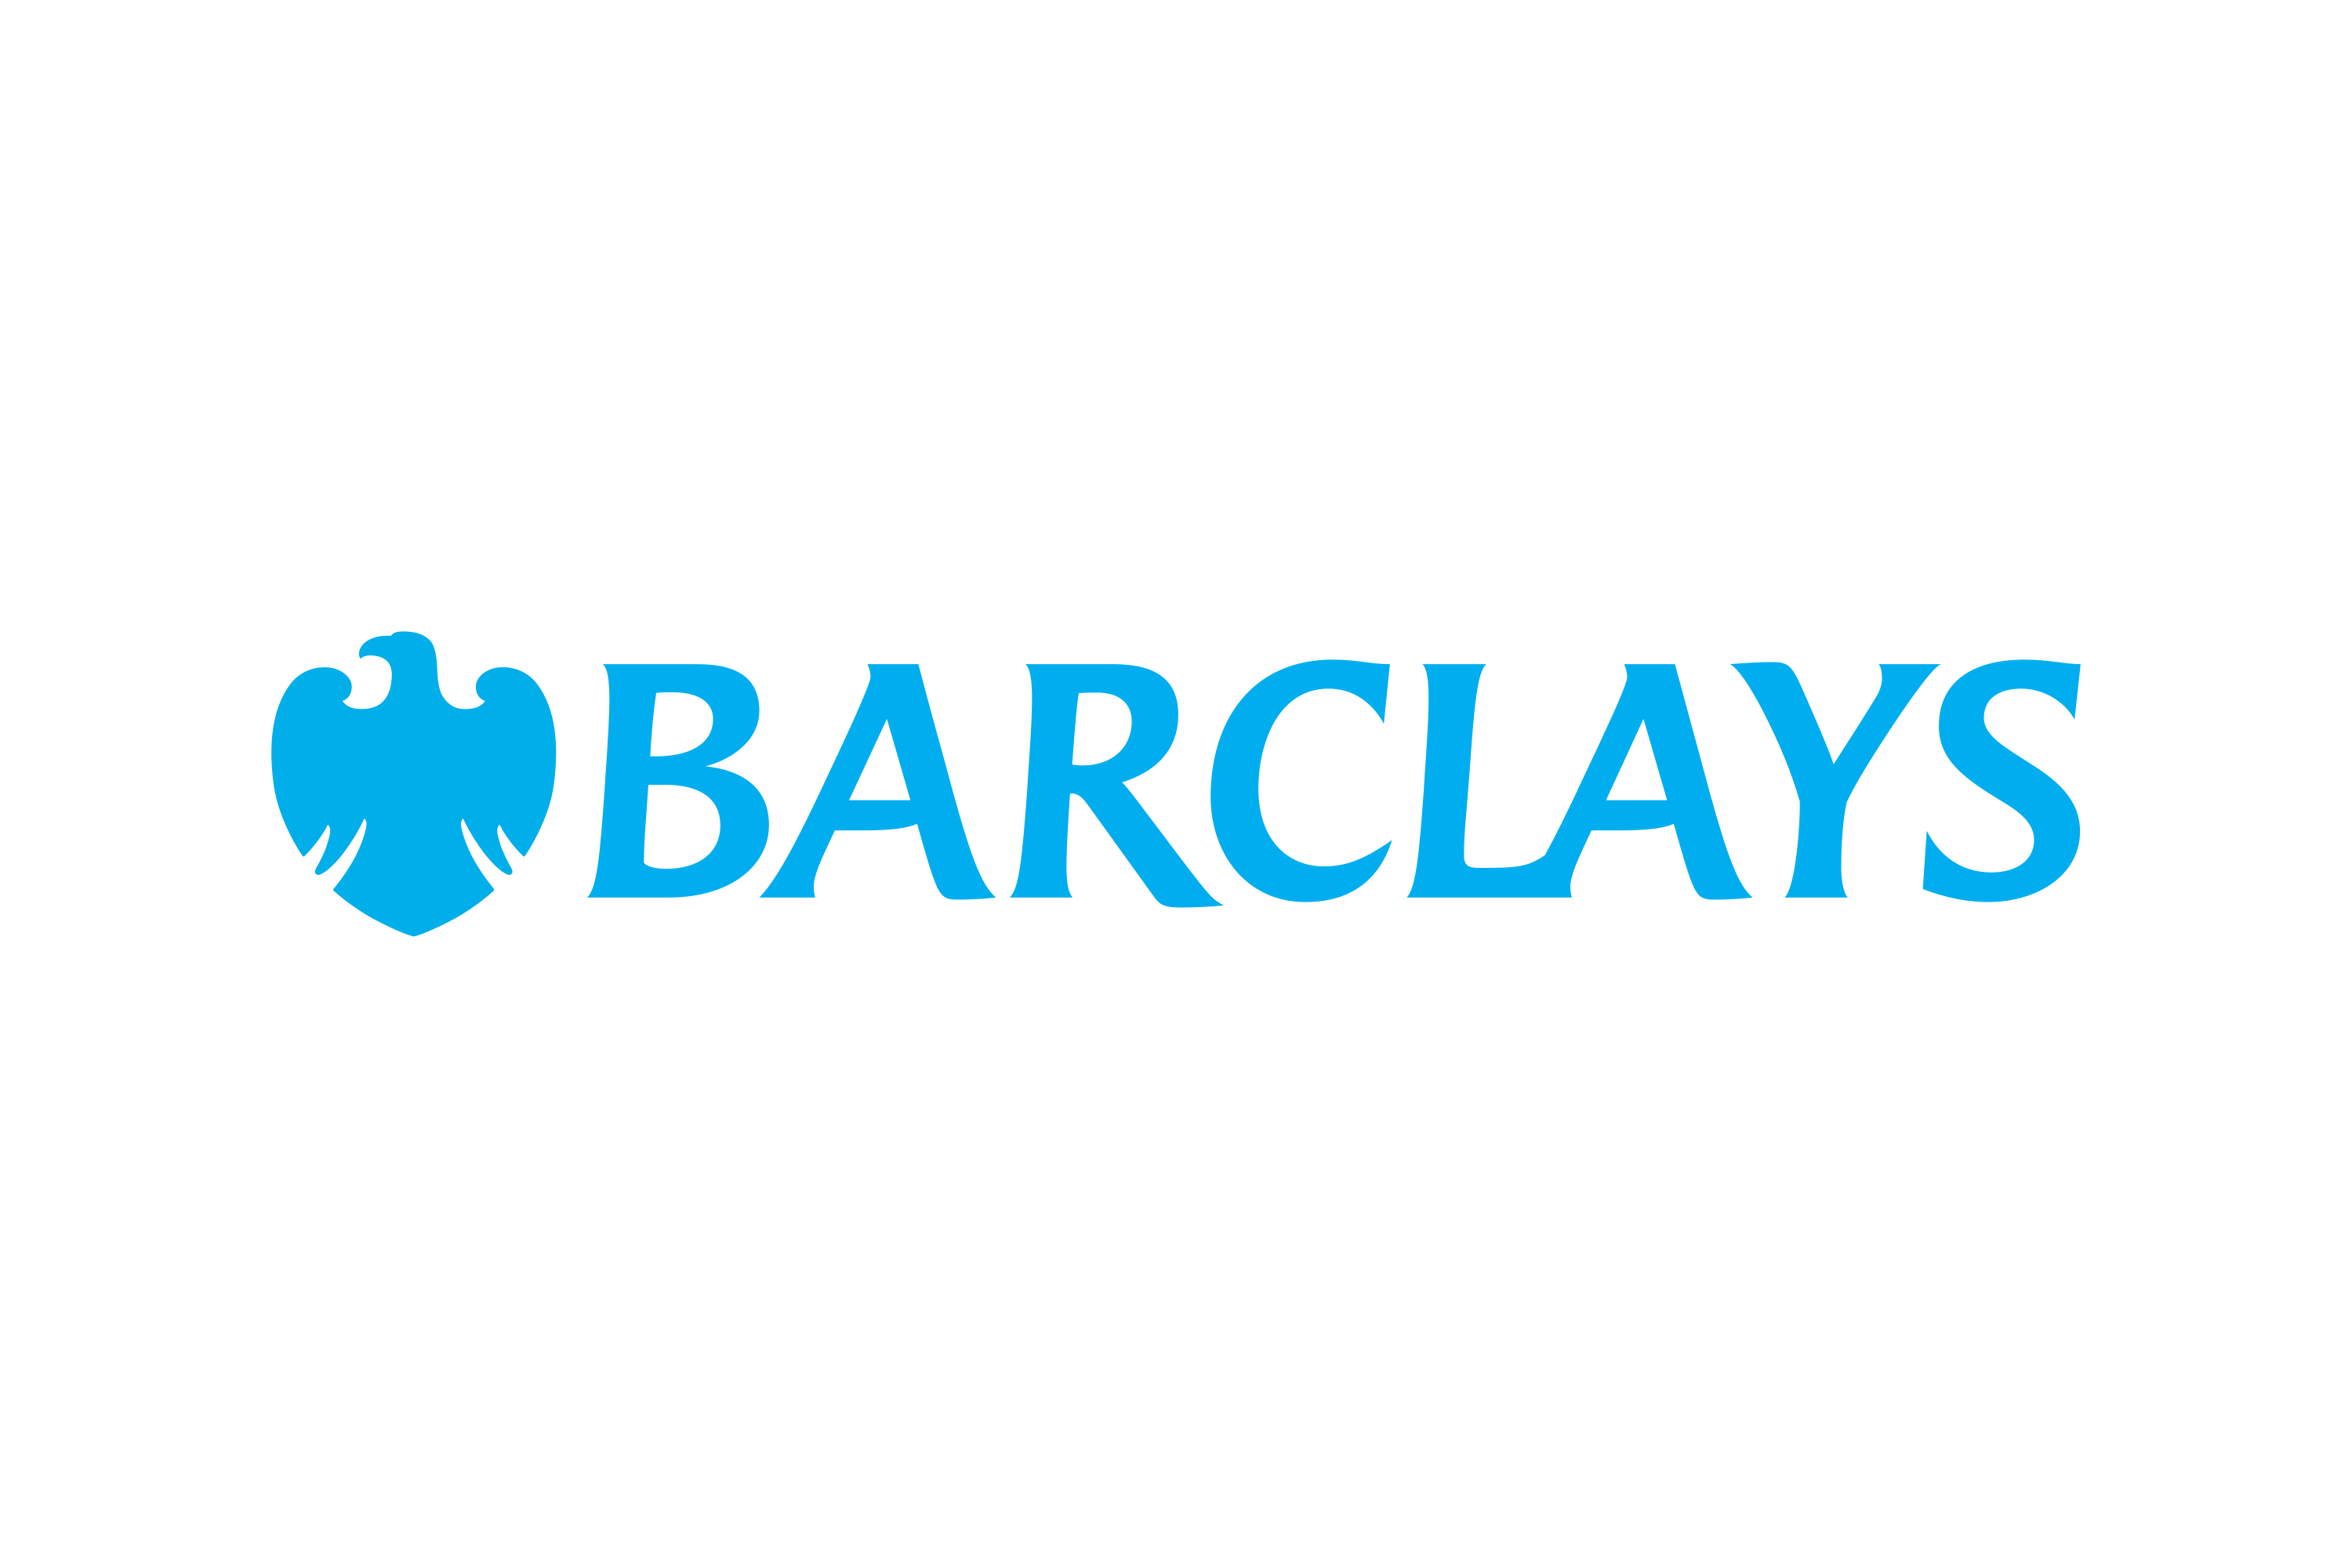 barclays.co.uk